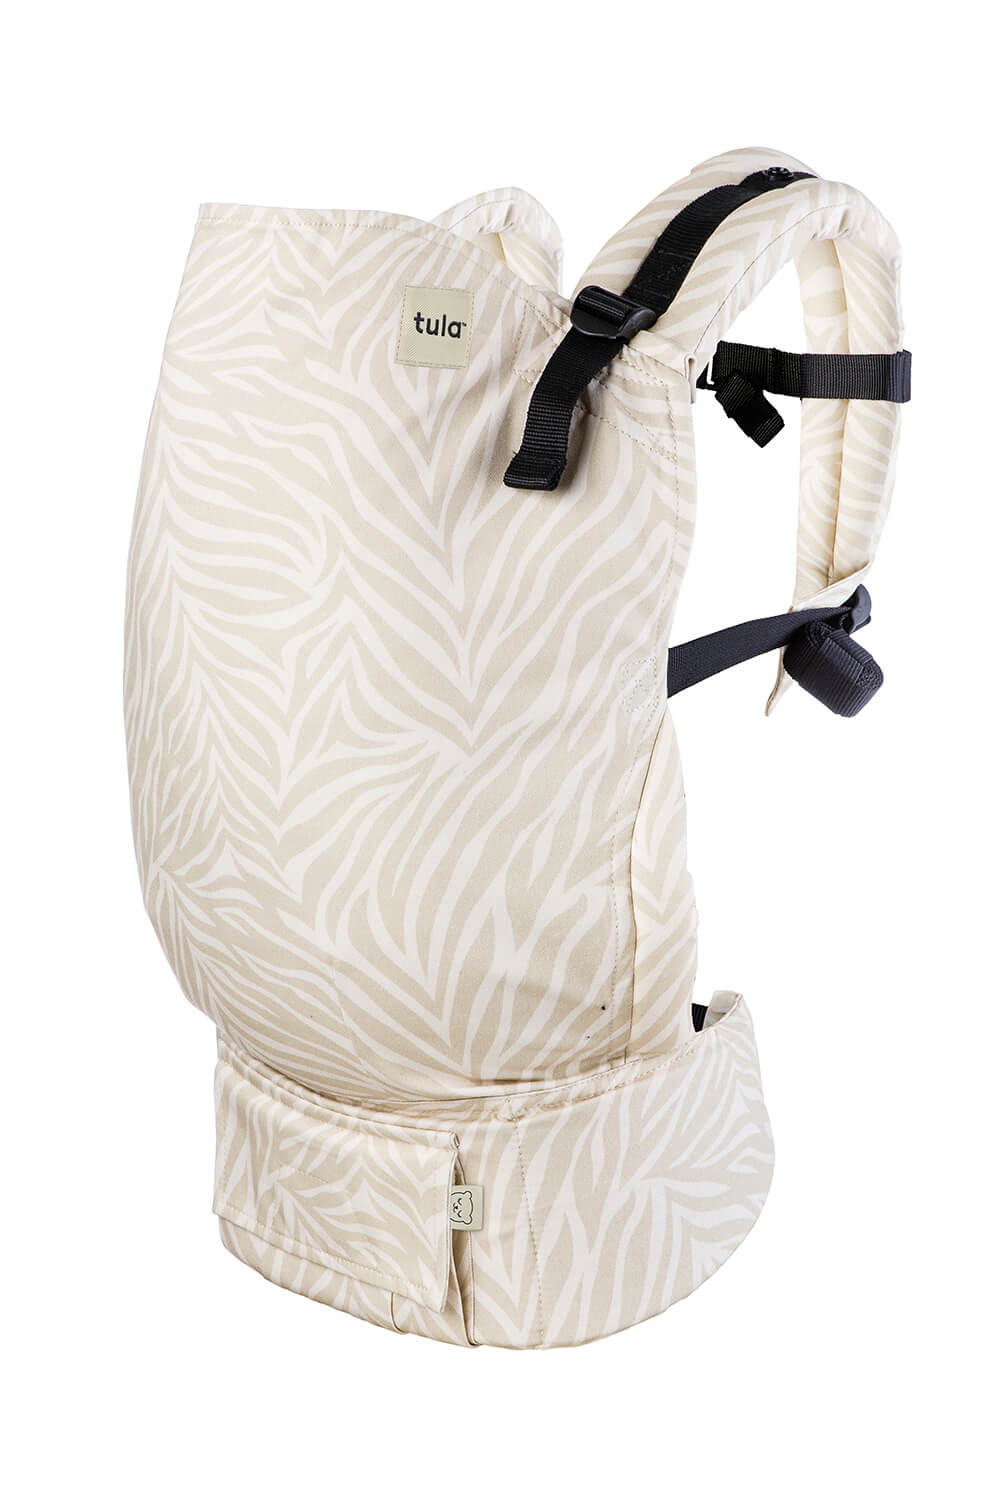 Nosidełko Tula Toddler Savannah to neutralne kremowe odcienie i monochromatyczny, subtelny wzór zebry